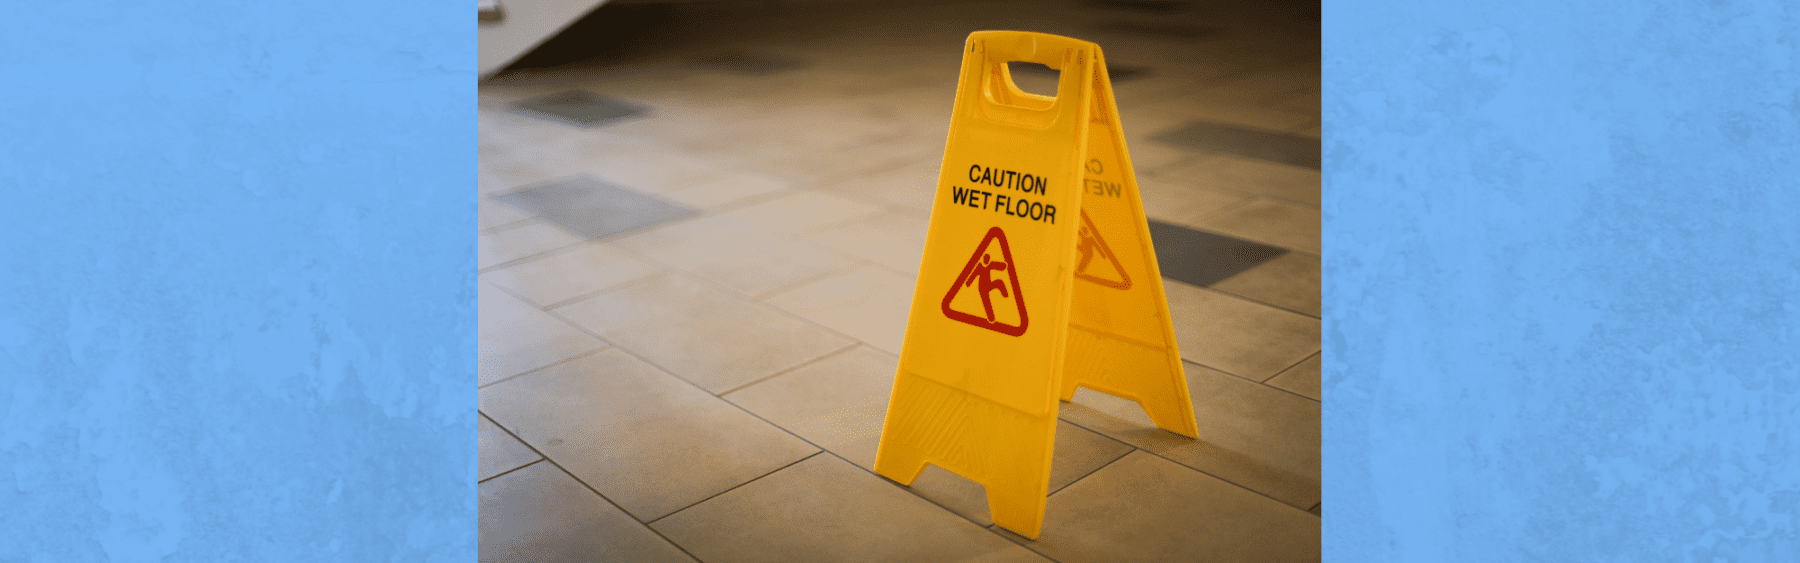 wet floor sign on tile floor